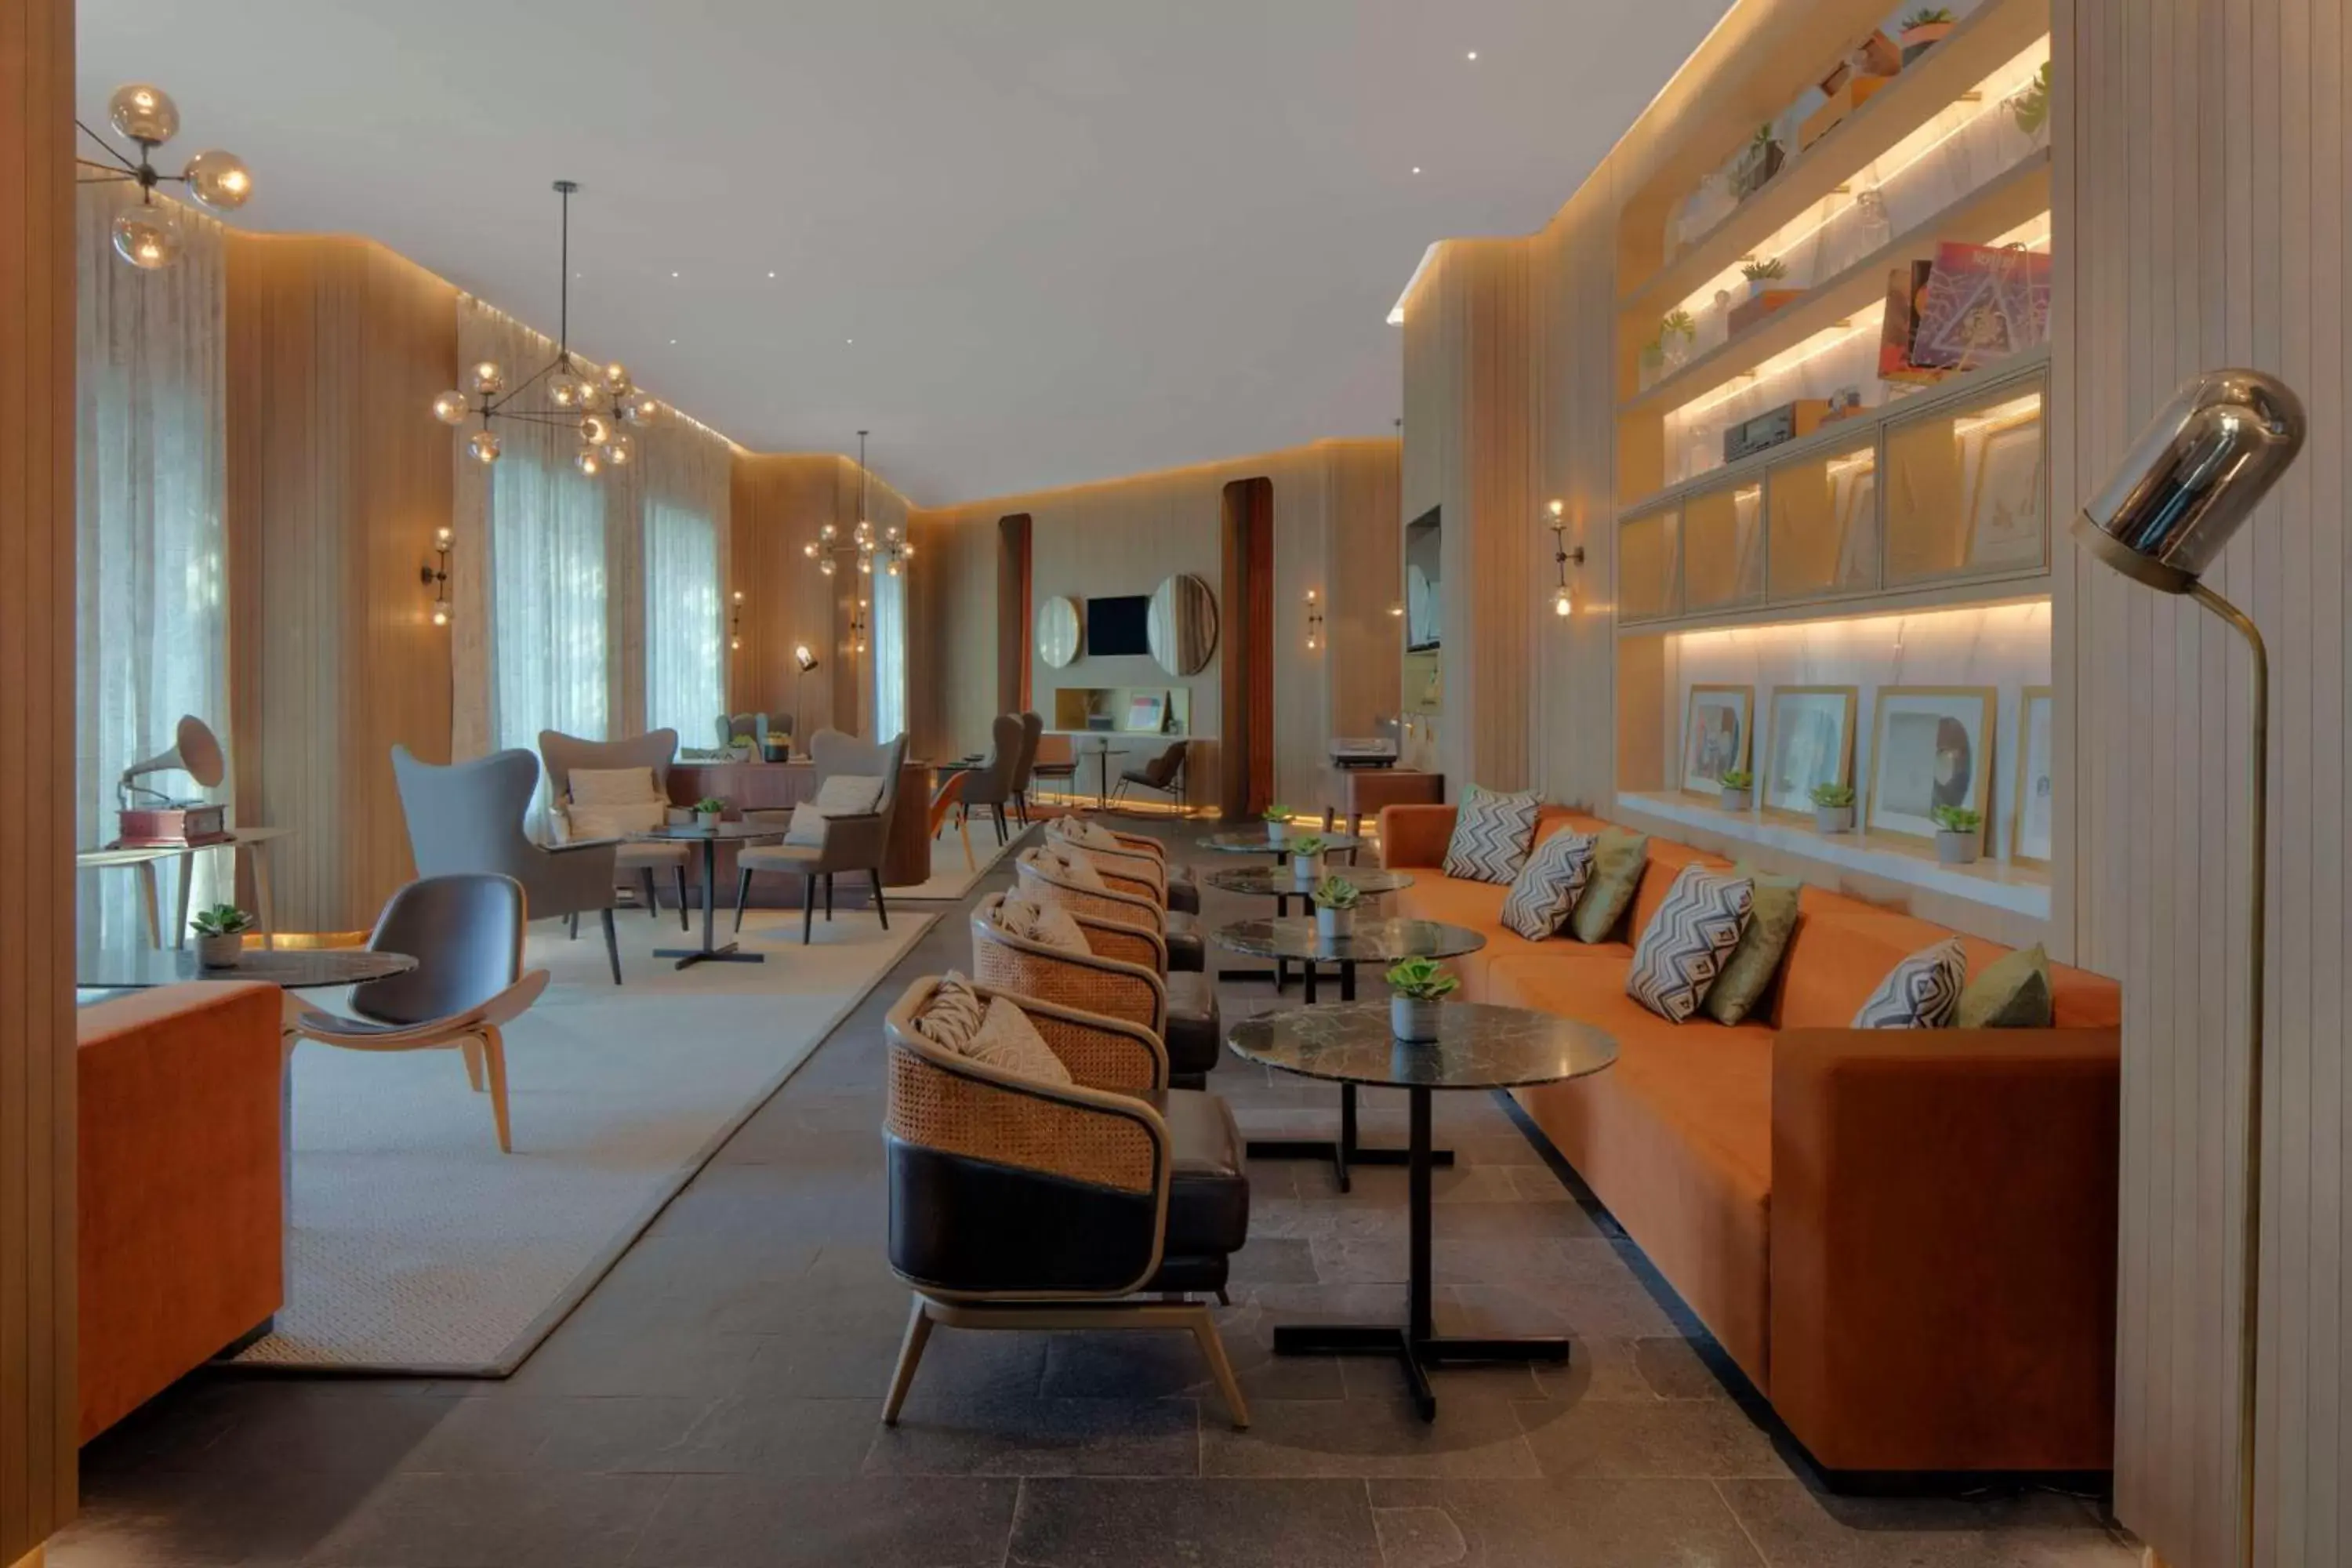 Restaurant/Places to Eat in Park Hyatt Dubai